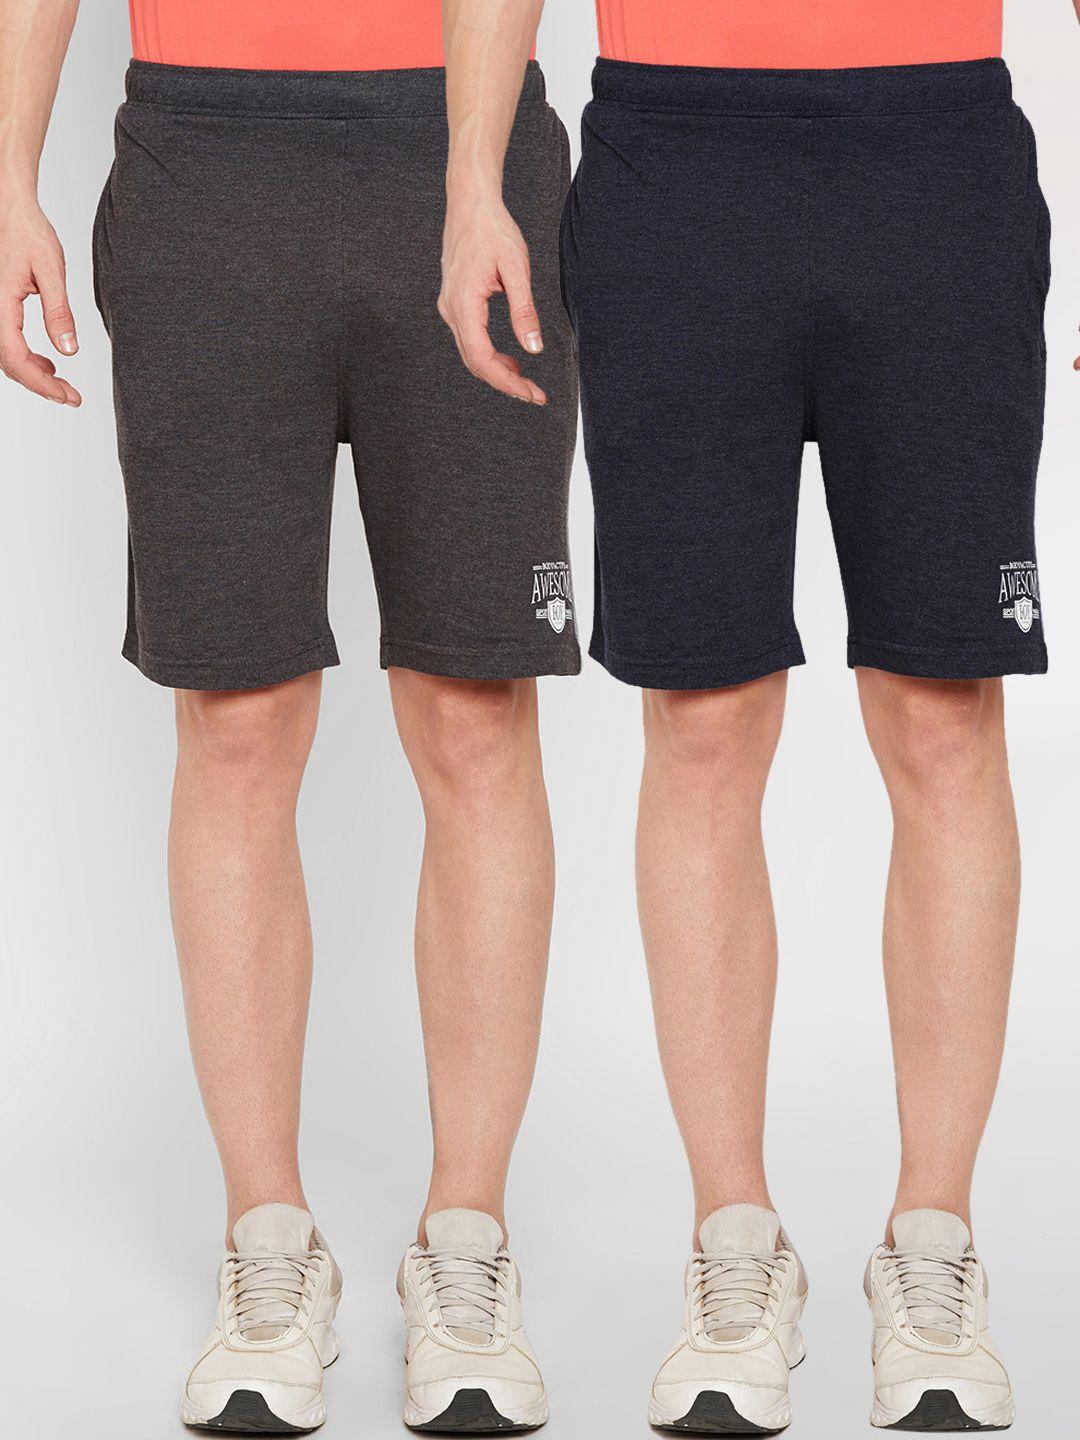 bodyactive men multicoloured solid regular fit regular shorts